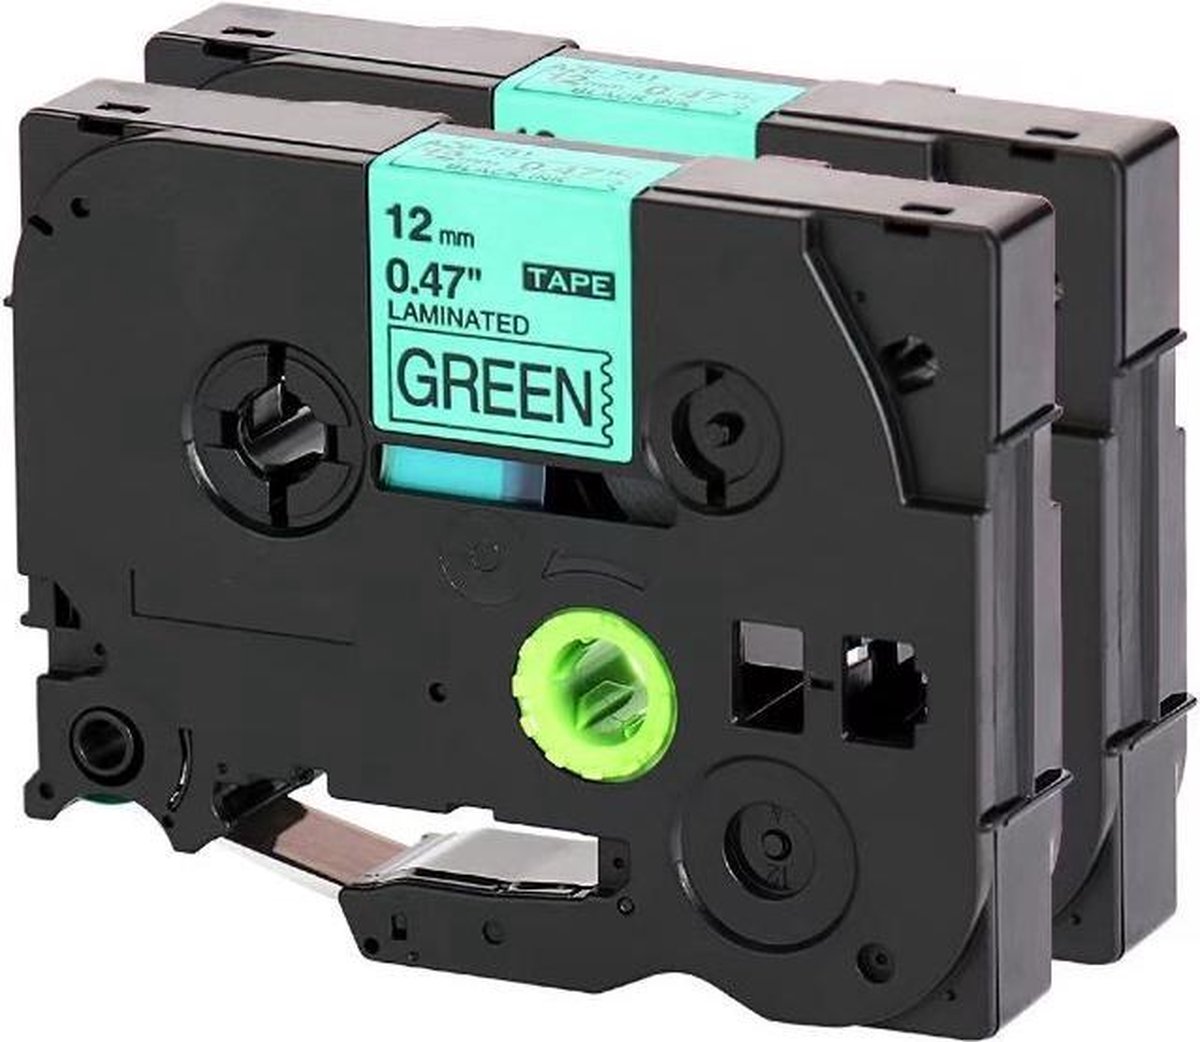 2x Compatible Label Tape TZe-731 / TZ-731 Zwart op Groen (12mm x 8m) | voor Brother PT-7500, PT-1830VP, PT-1880, PT-1880C, PT-1880SC, PT-1880W label printer